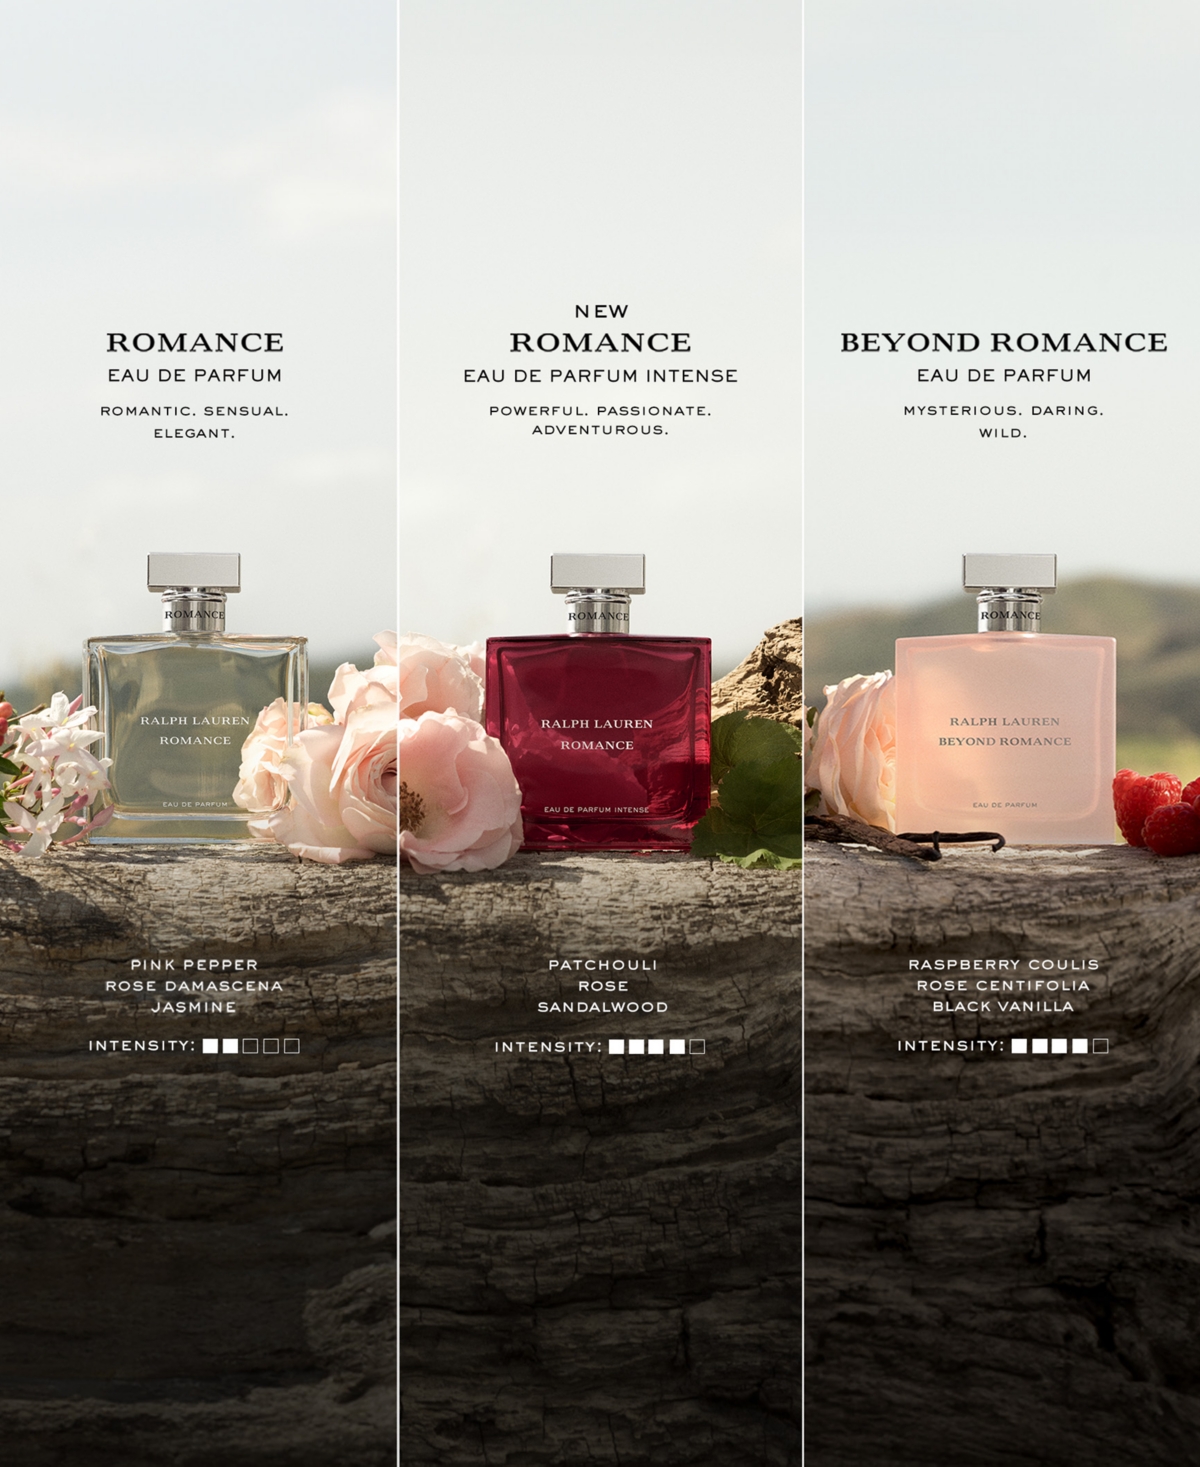 Shop Ralph Lauren Romance Eau De Parfum Intense, 3.4 Oz. In No Color